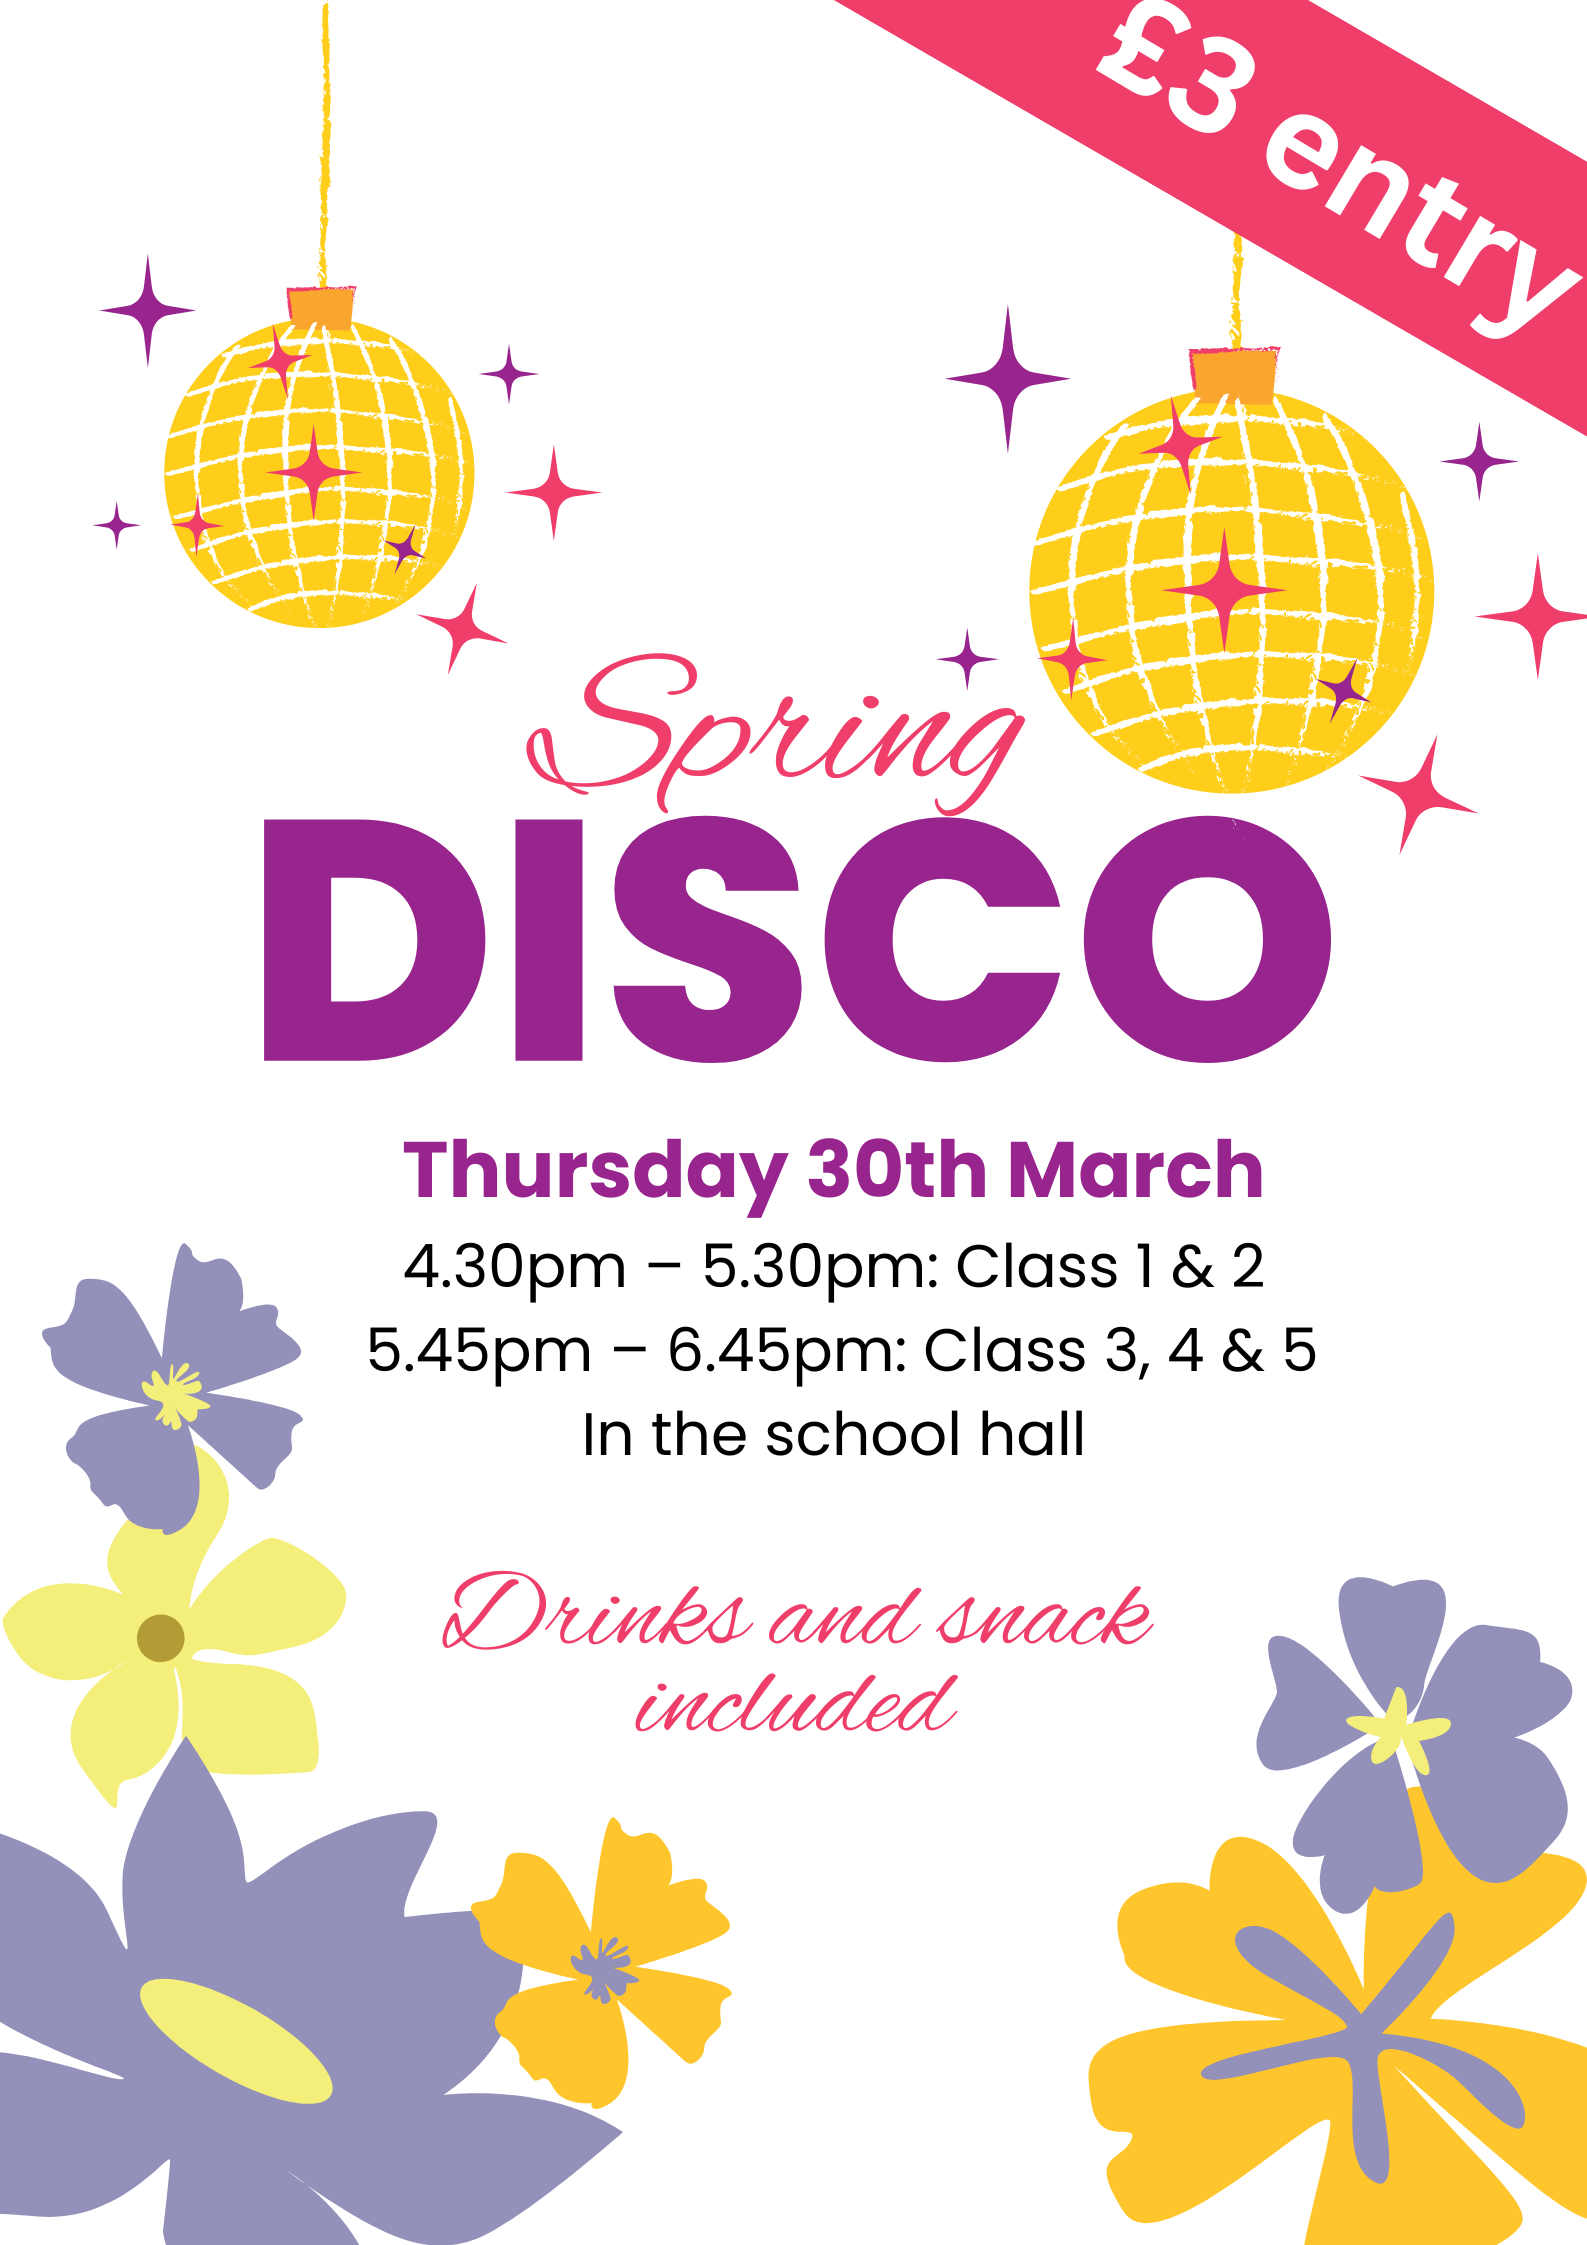 PTA Spring Disco Poster